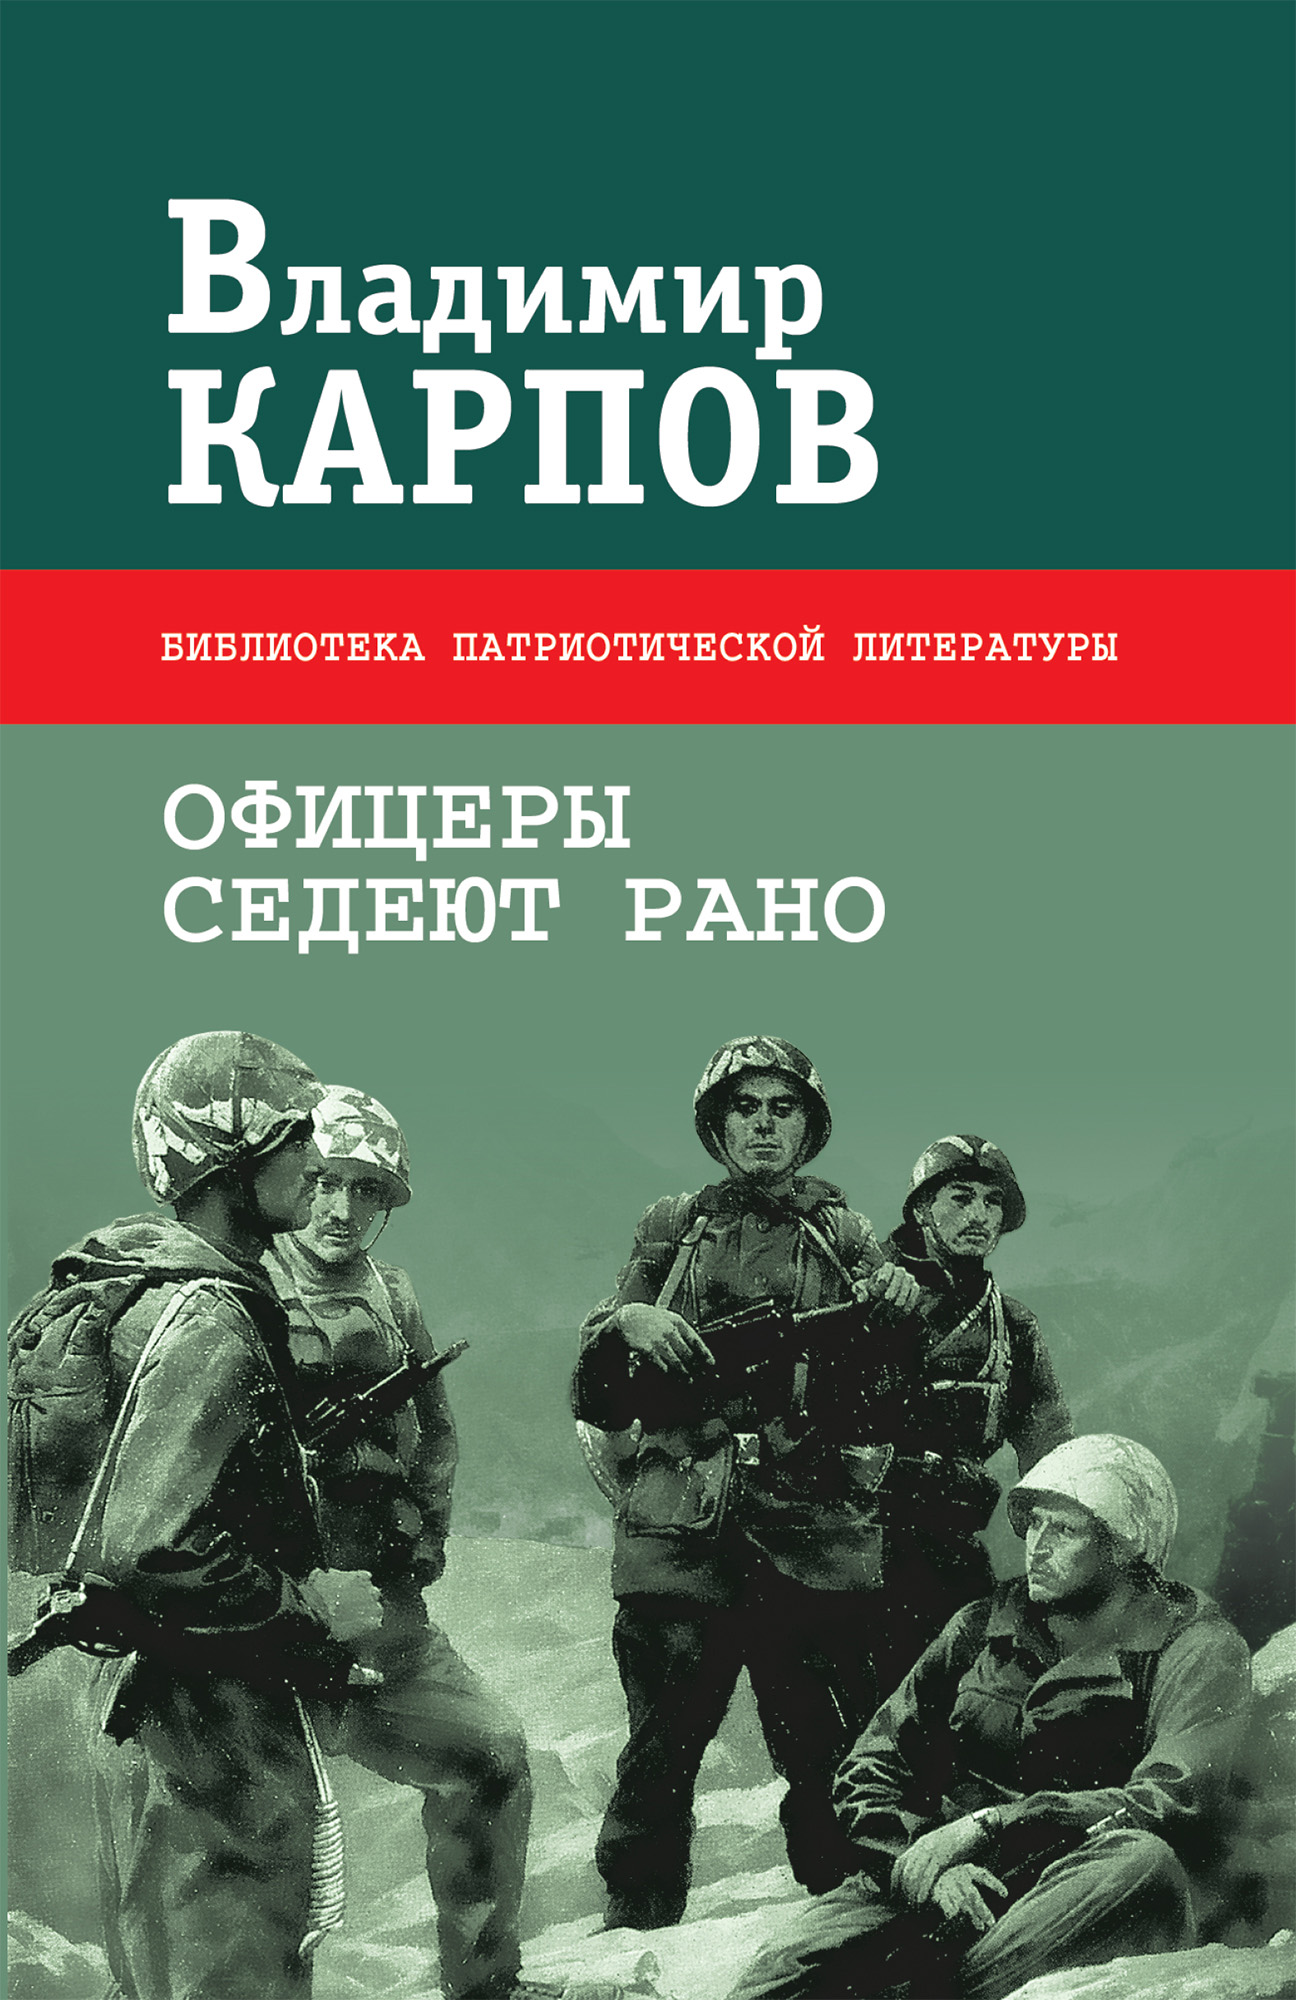 Слушать книгу офицеры. Книги о войне. Книги Владимира Карпова. Военные книги с авторами.